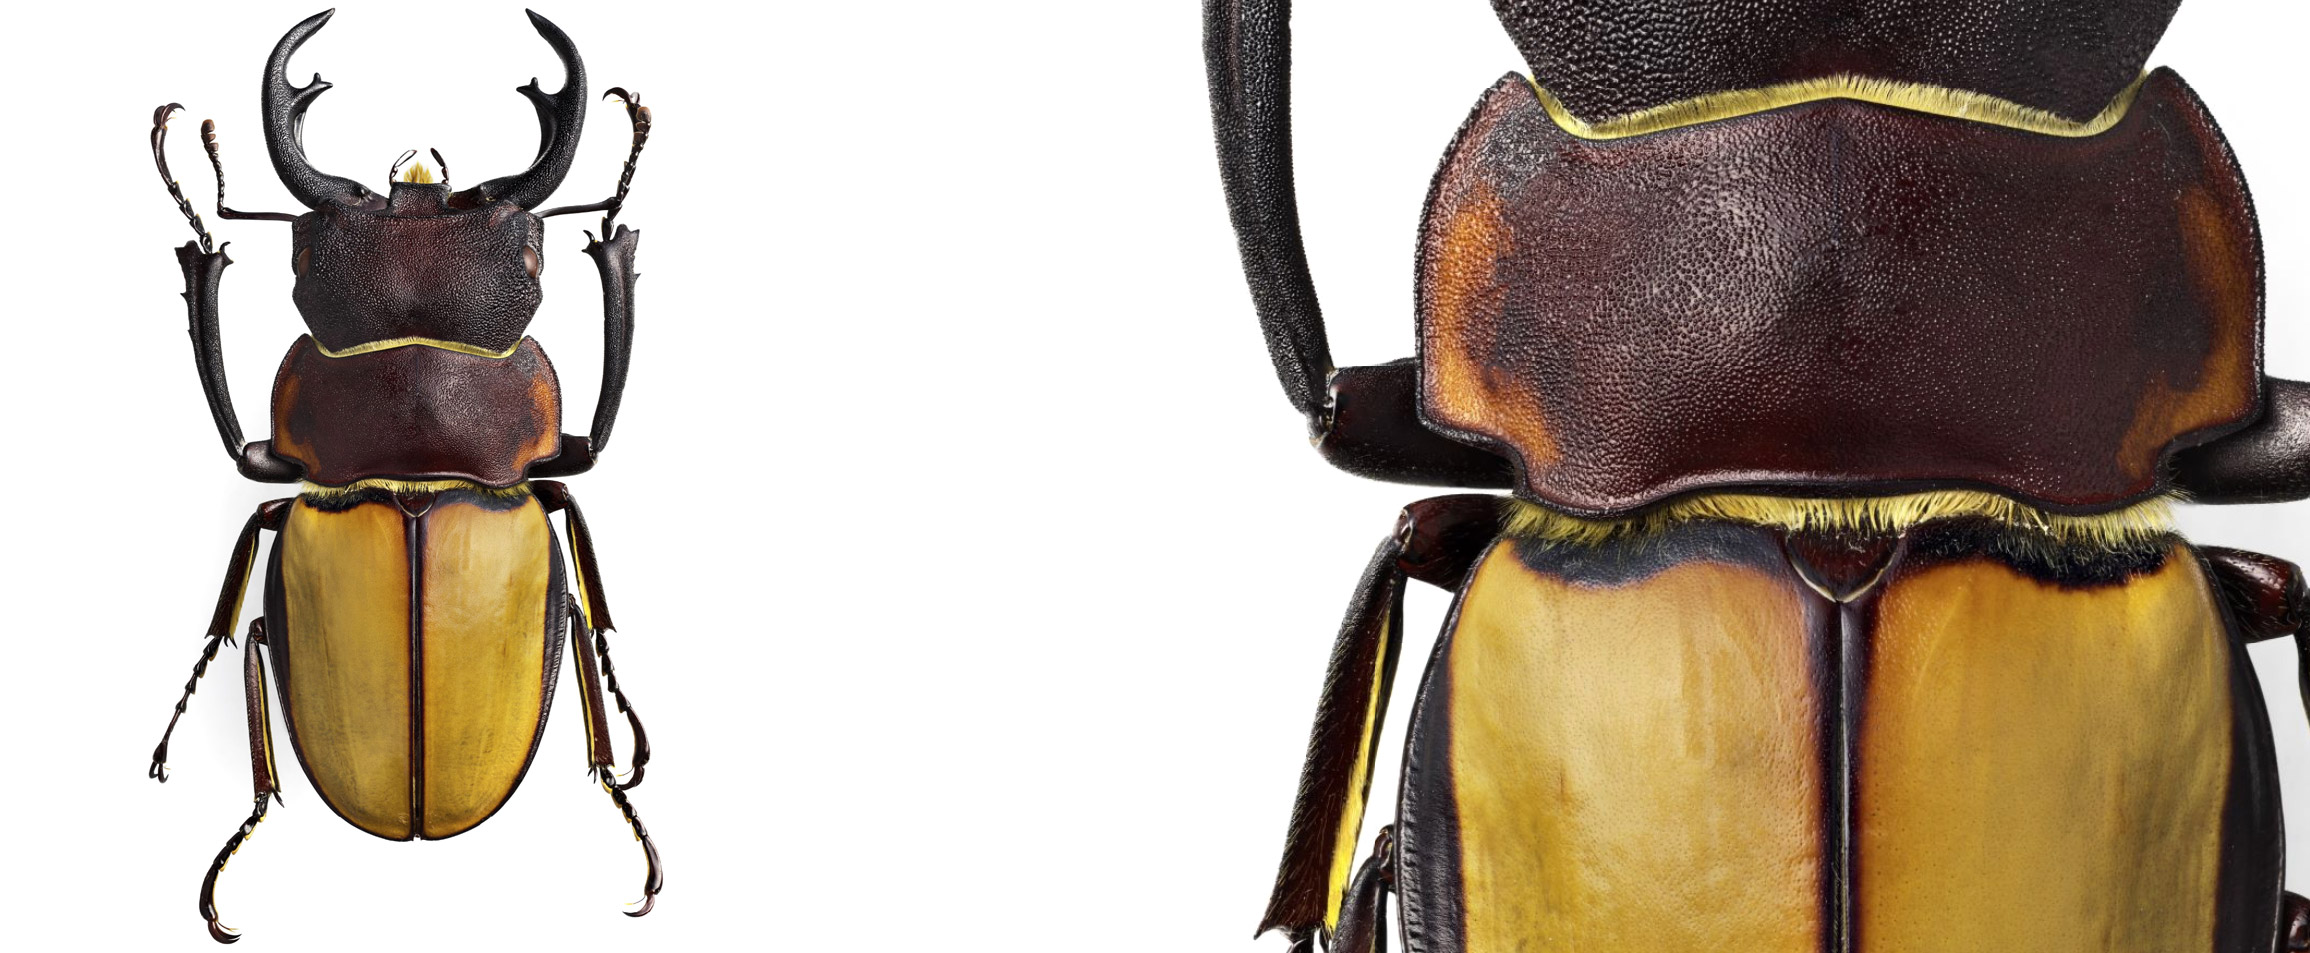 Besouro fotografado pelo sueco Göran Liljeberg e um detalhe ampliado da imagem do inseto